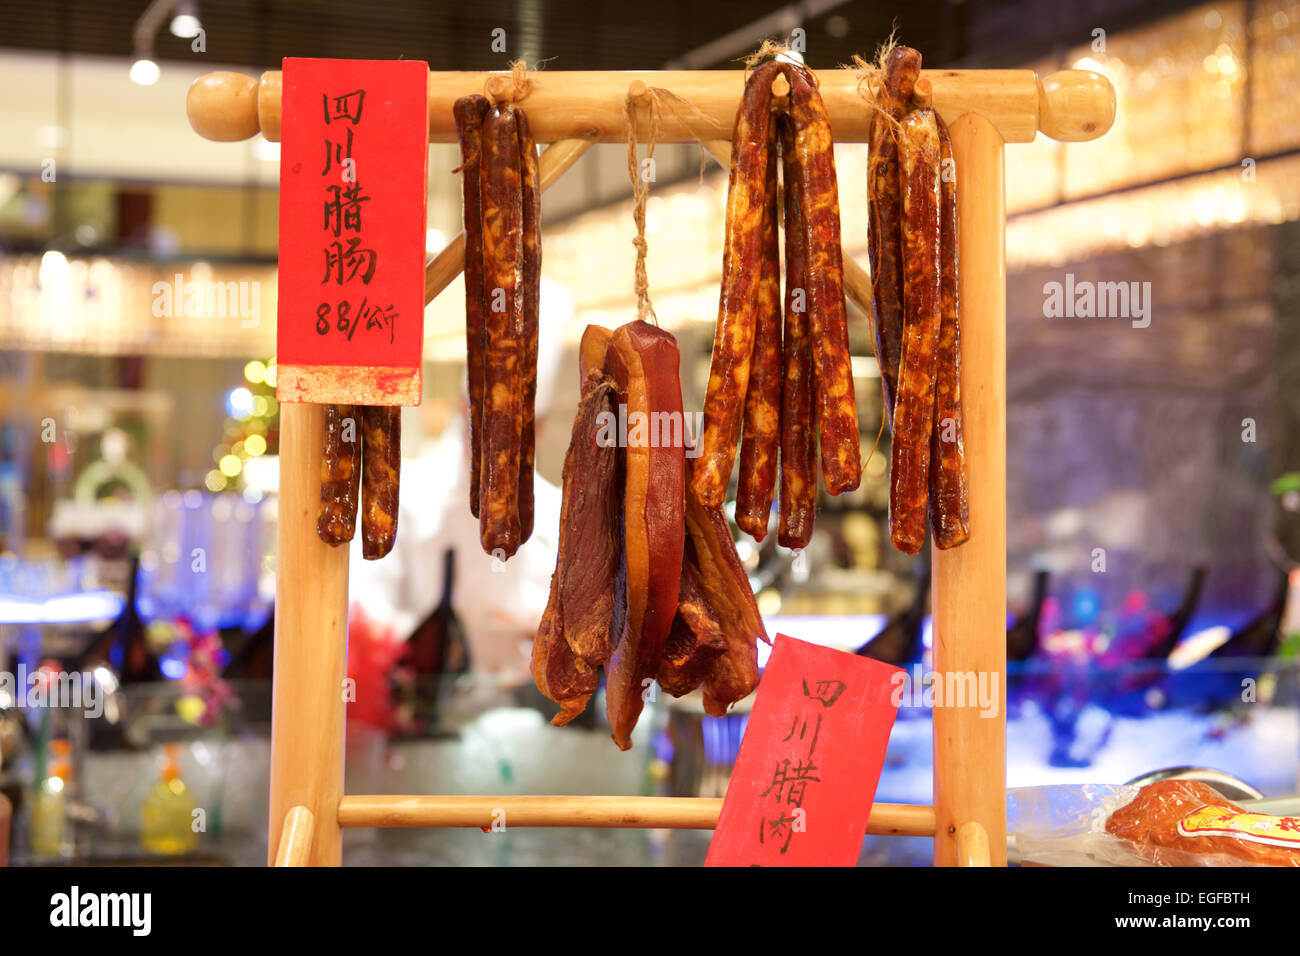 Saucisses chinoises accroché sur un stand pour la vente Banque D'Images